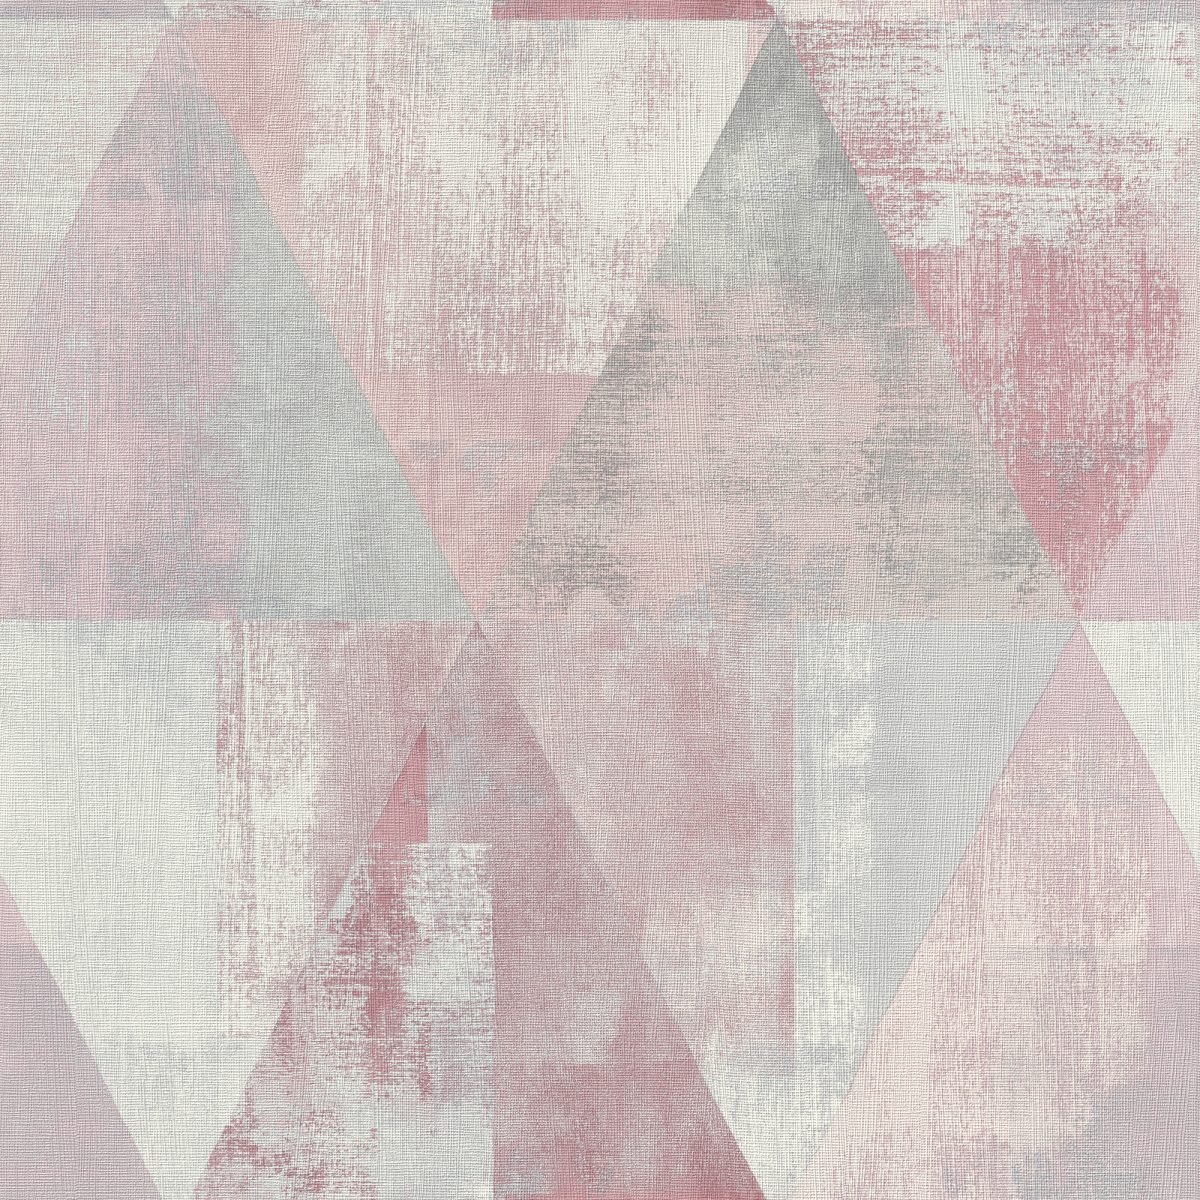 apel mural triángulos rosado y gris HYDE PARK 410938 RASCH